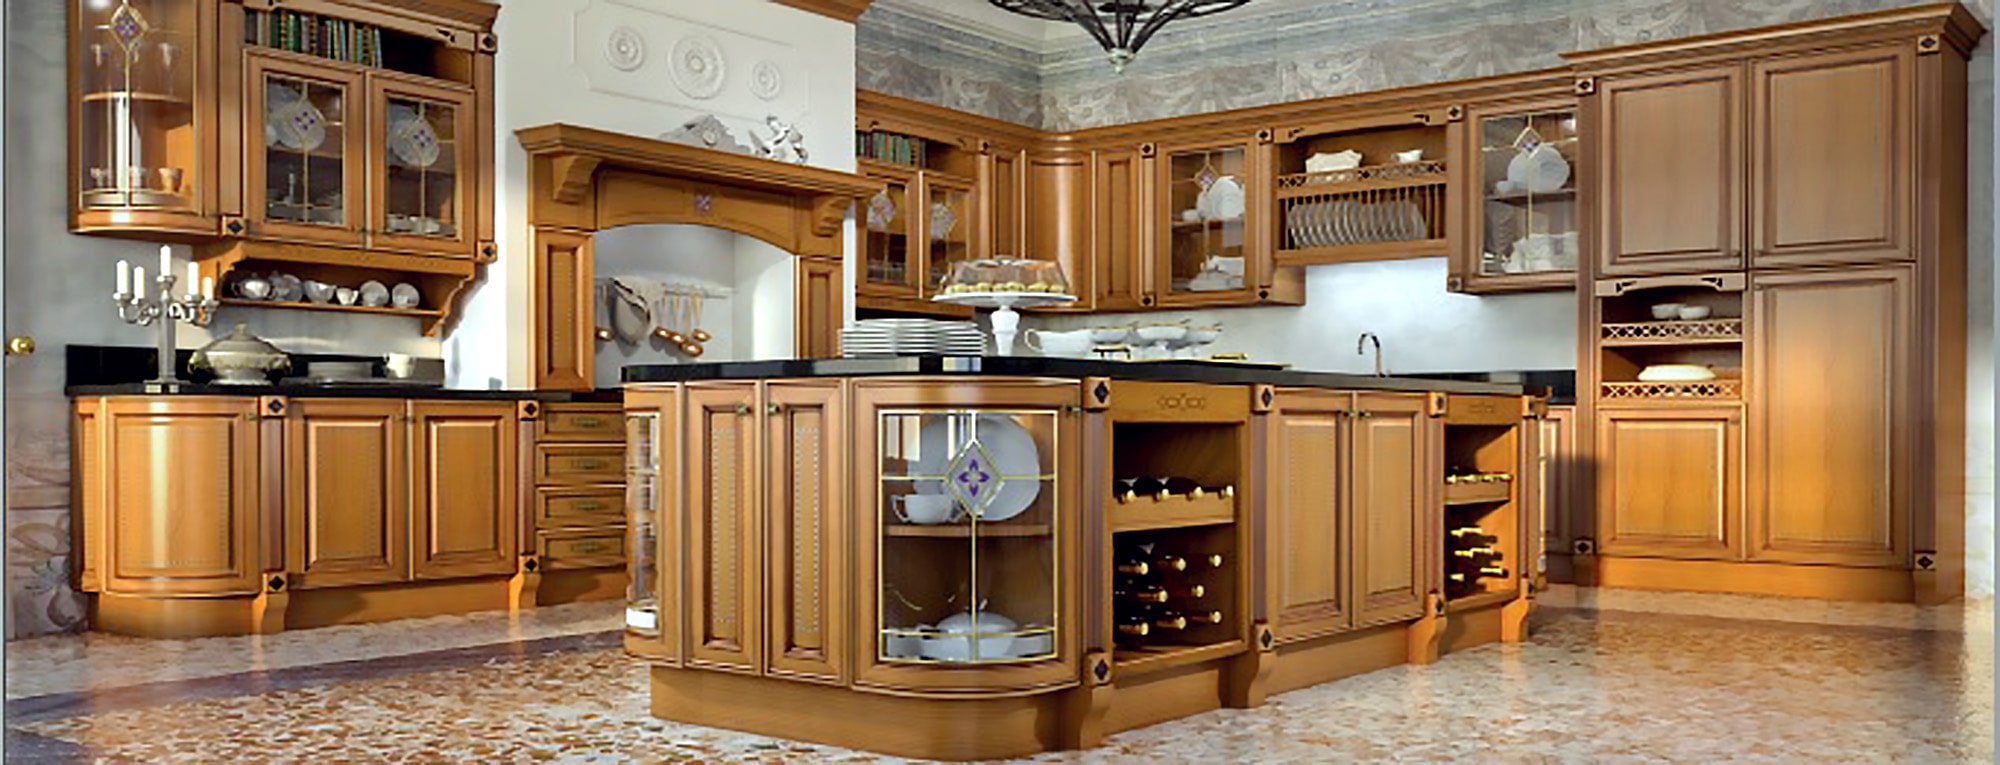 آشپزخانه دیزاین شده با کابینت تمام چوب کلاسیک